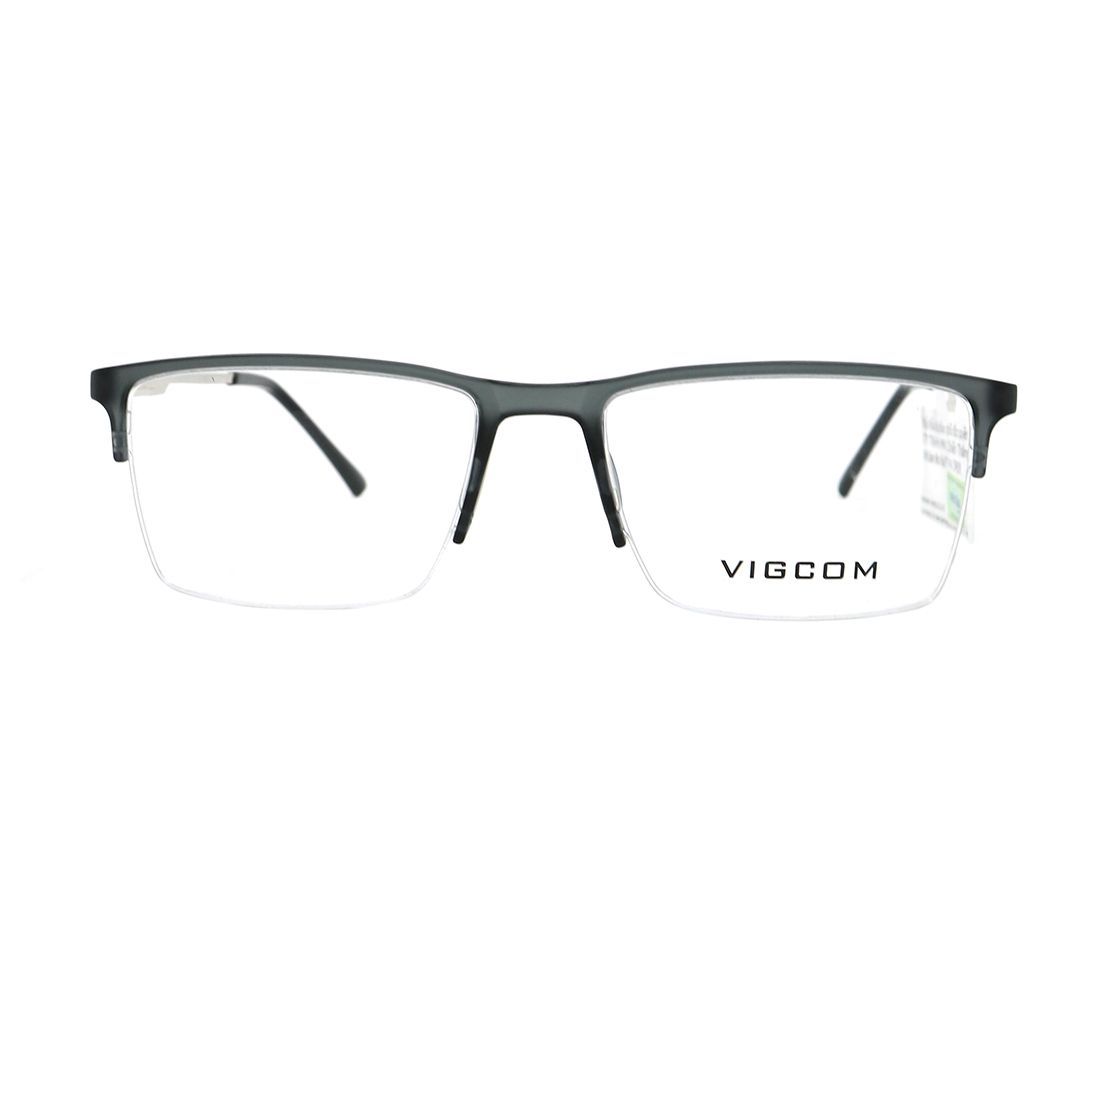  Gọng kính Vigcom VG5806 C6 